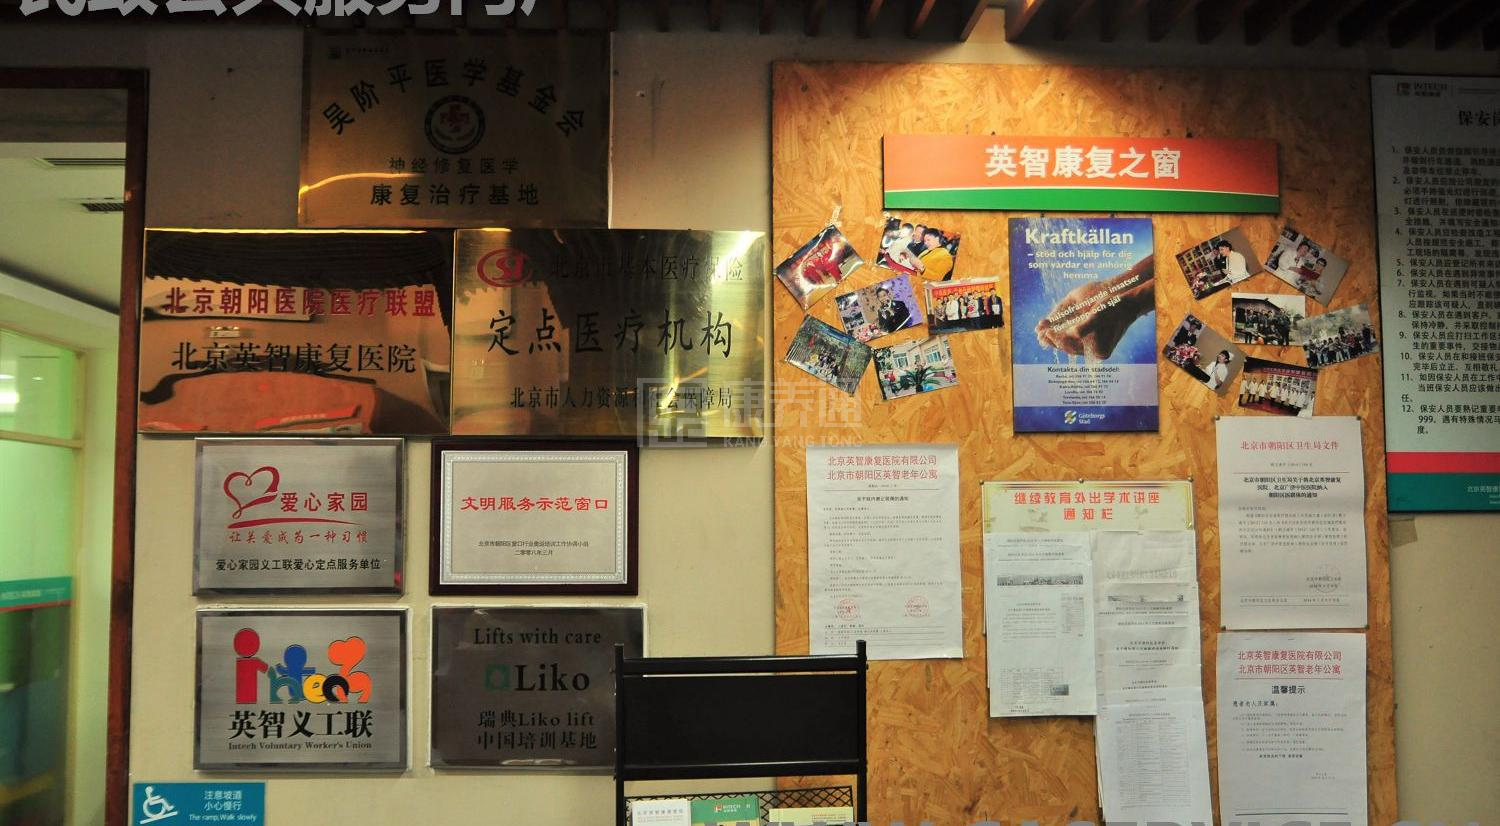 北京市朝阳区英智老年公寓服务项目图6让长者体面而尊严地生活